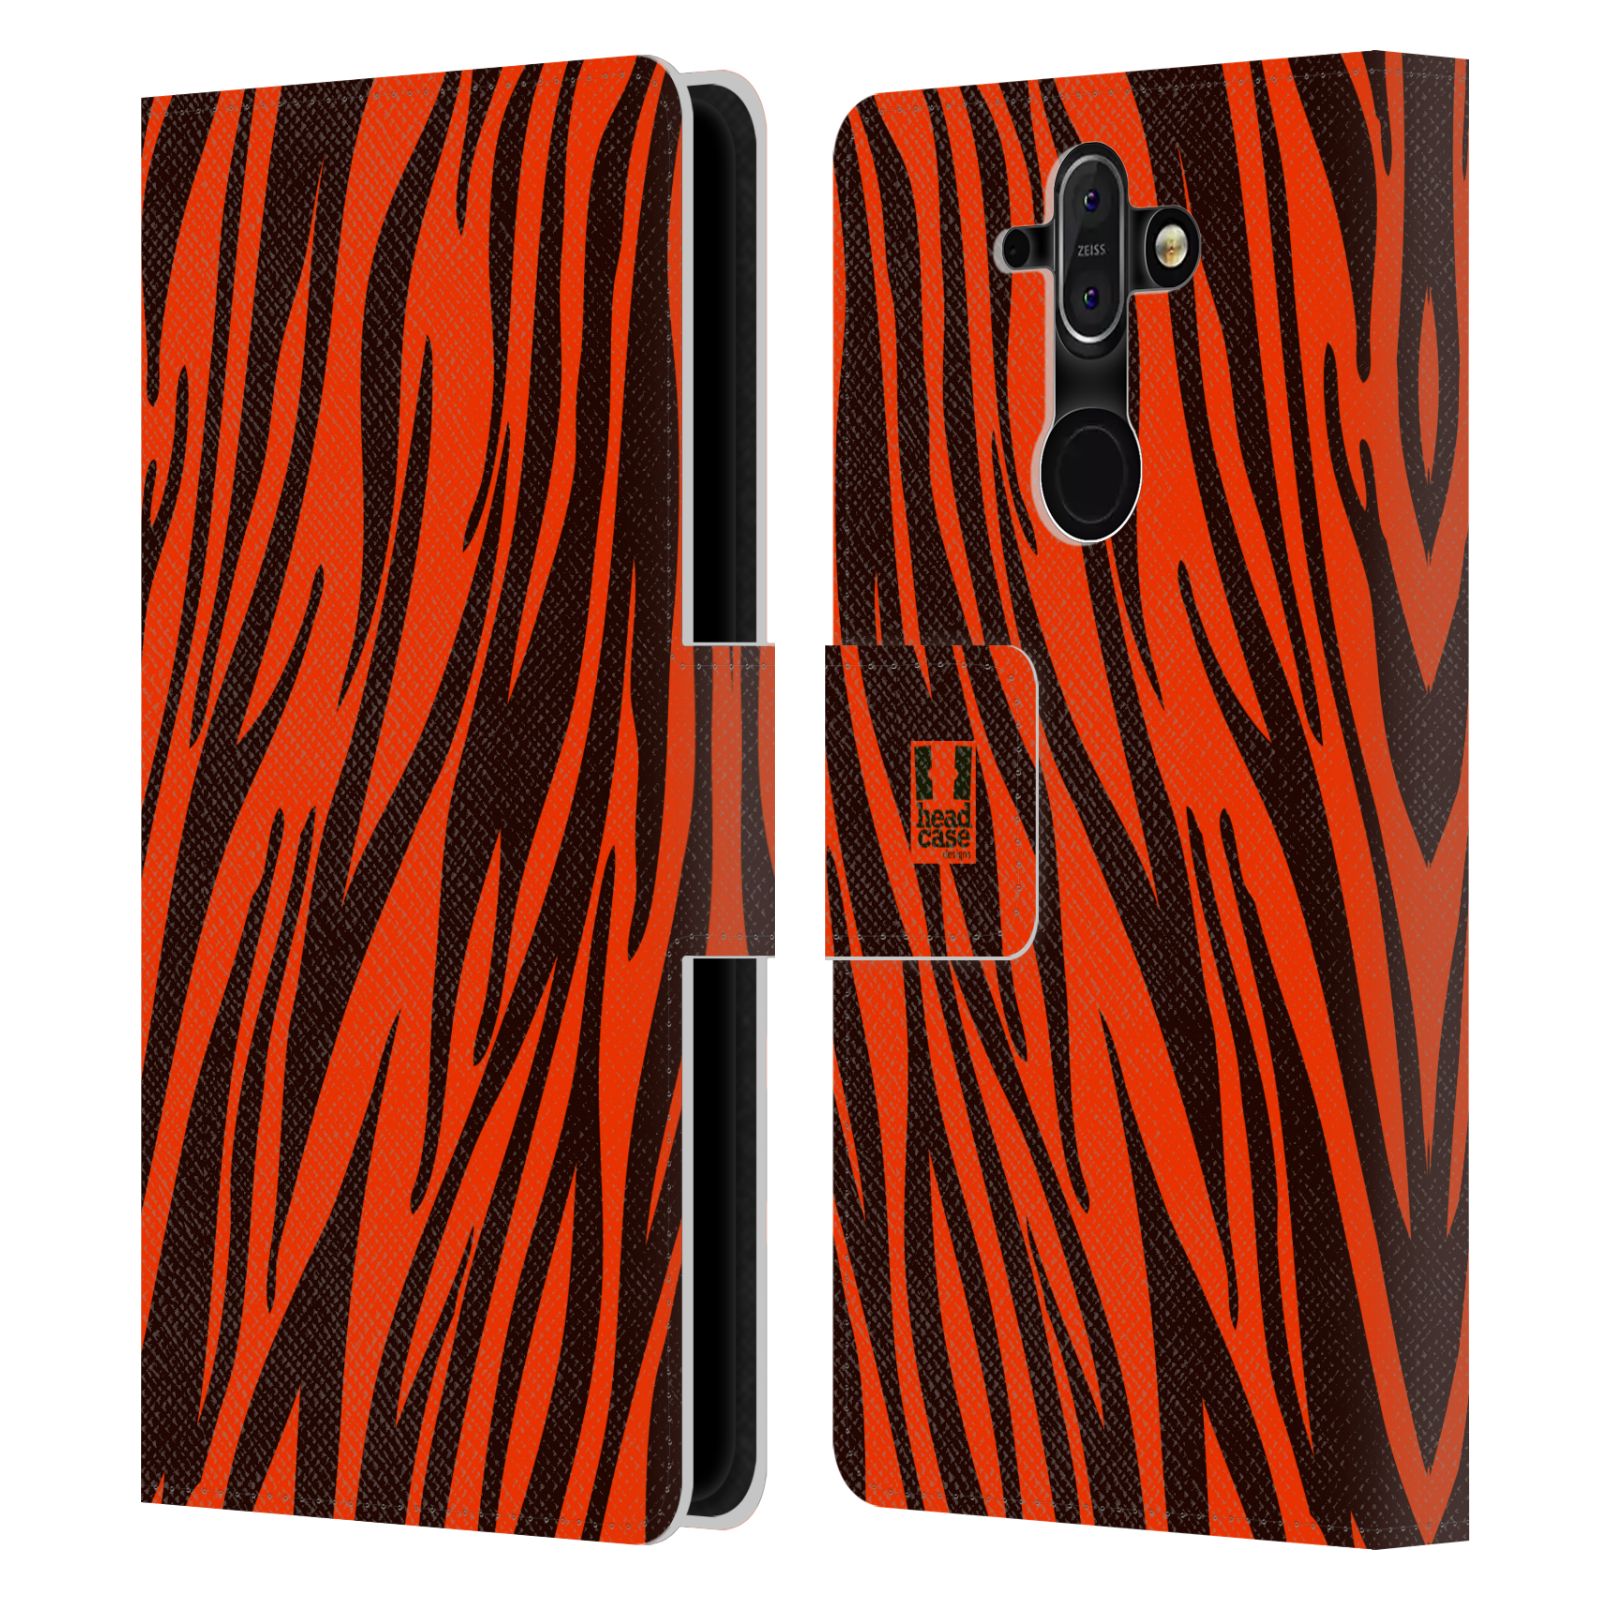 HEAD CASE Flipové pouzdro pro mobil Nokia 8 SIROCCO Zvířecí barevné vzory oranžový tygr